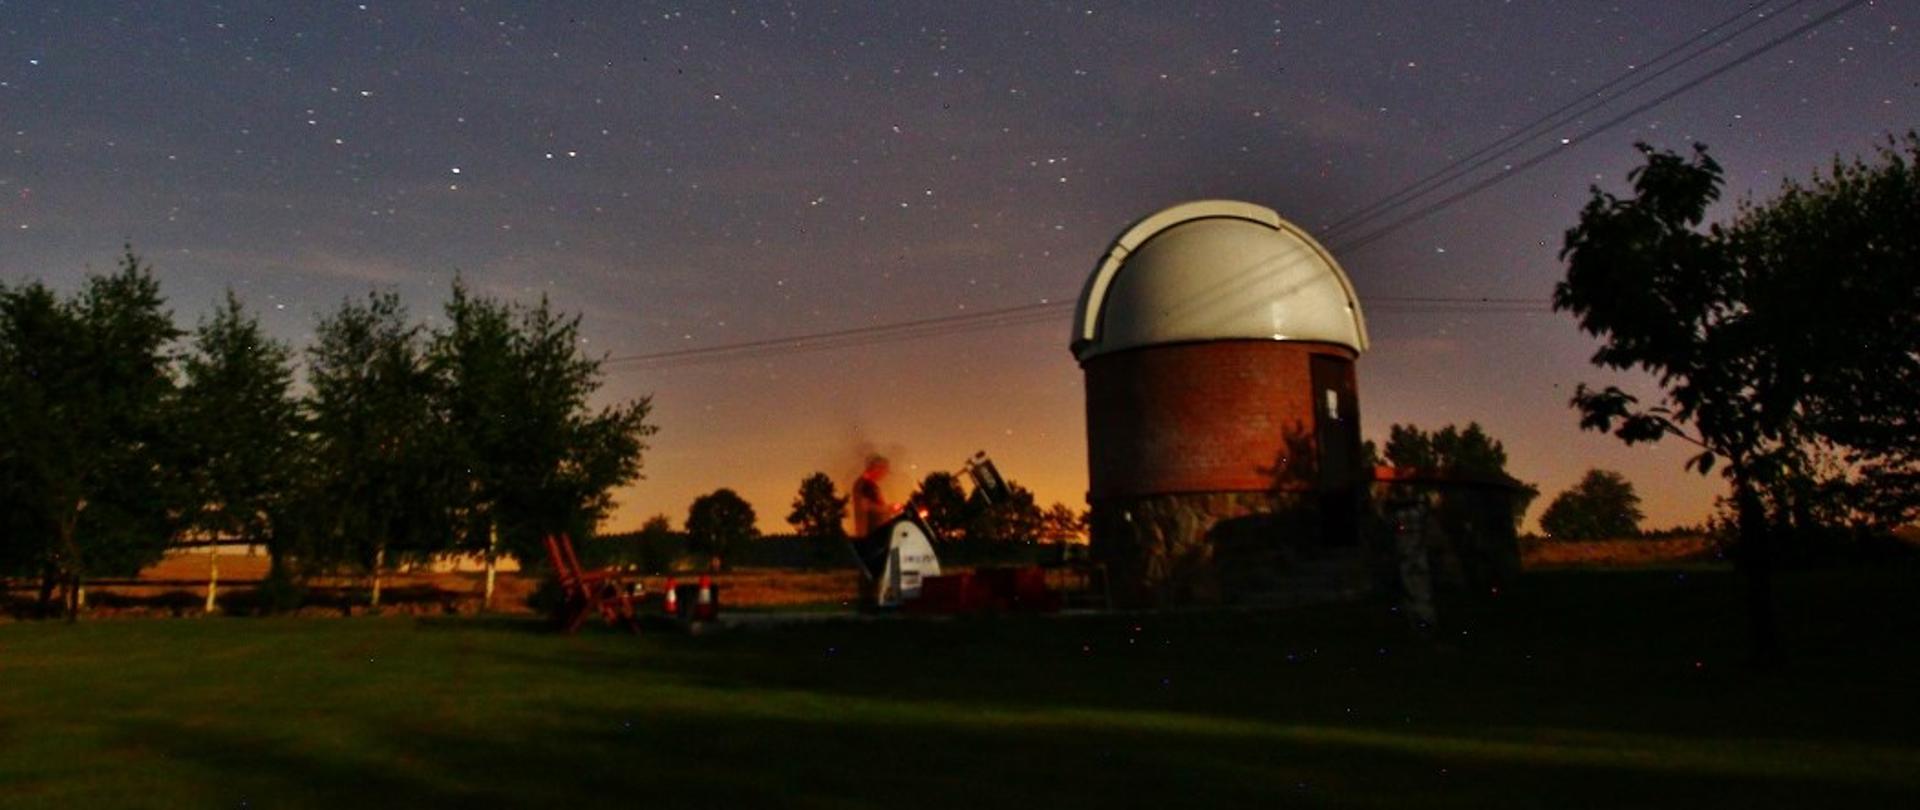 Na zdjęciu widać kopułę obserwatorium na tle późnowieczornego rozgwieżdżonego nieba.